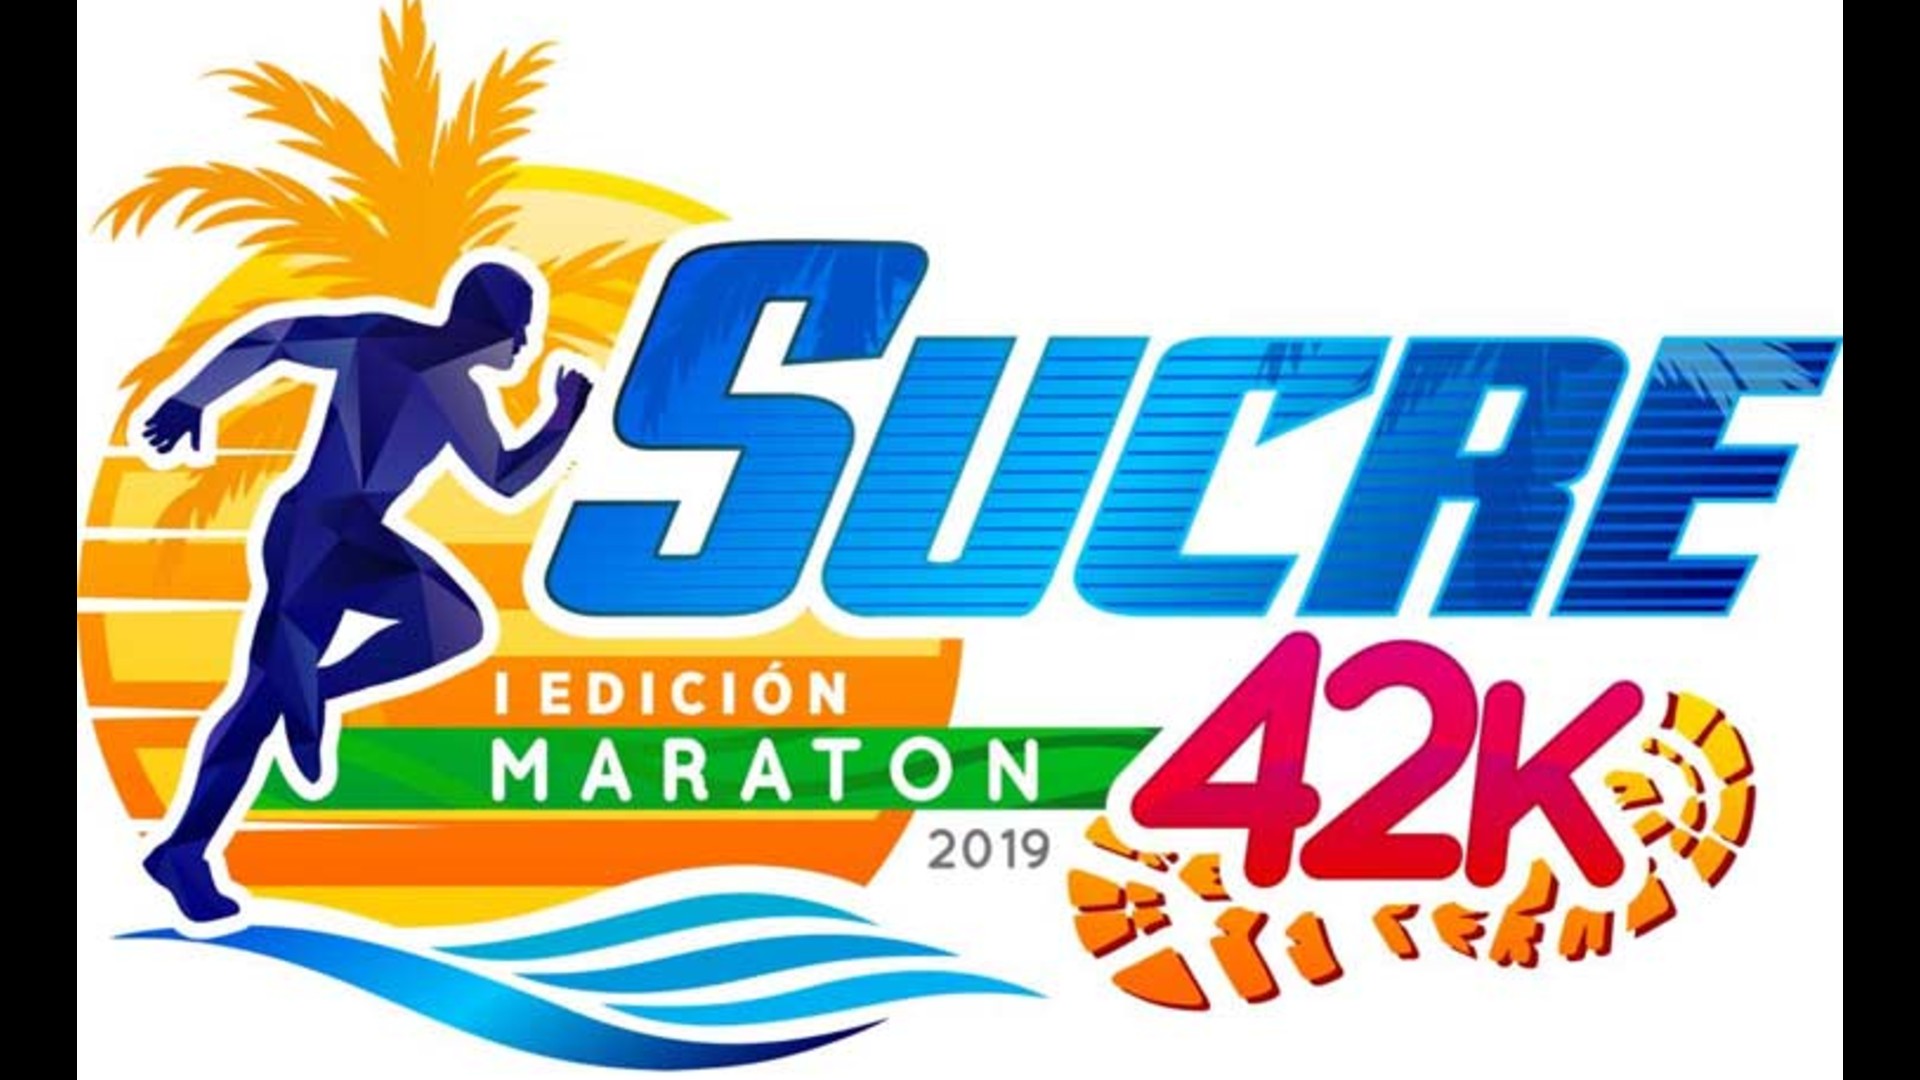 Venezuela se prepara para el Maratón Internacional de Sucre 2019